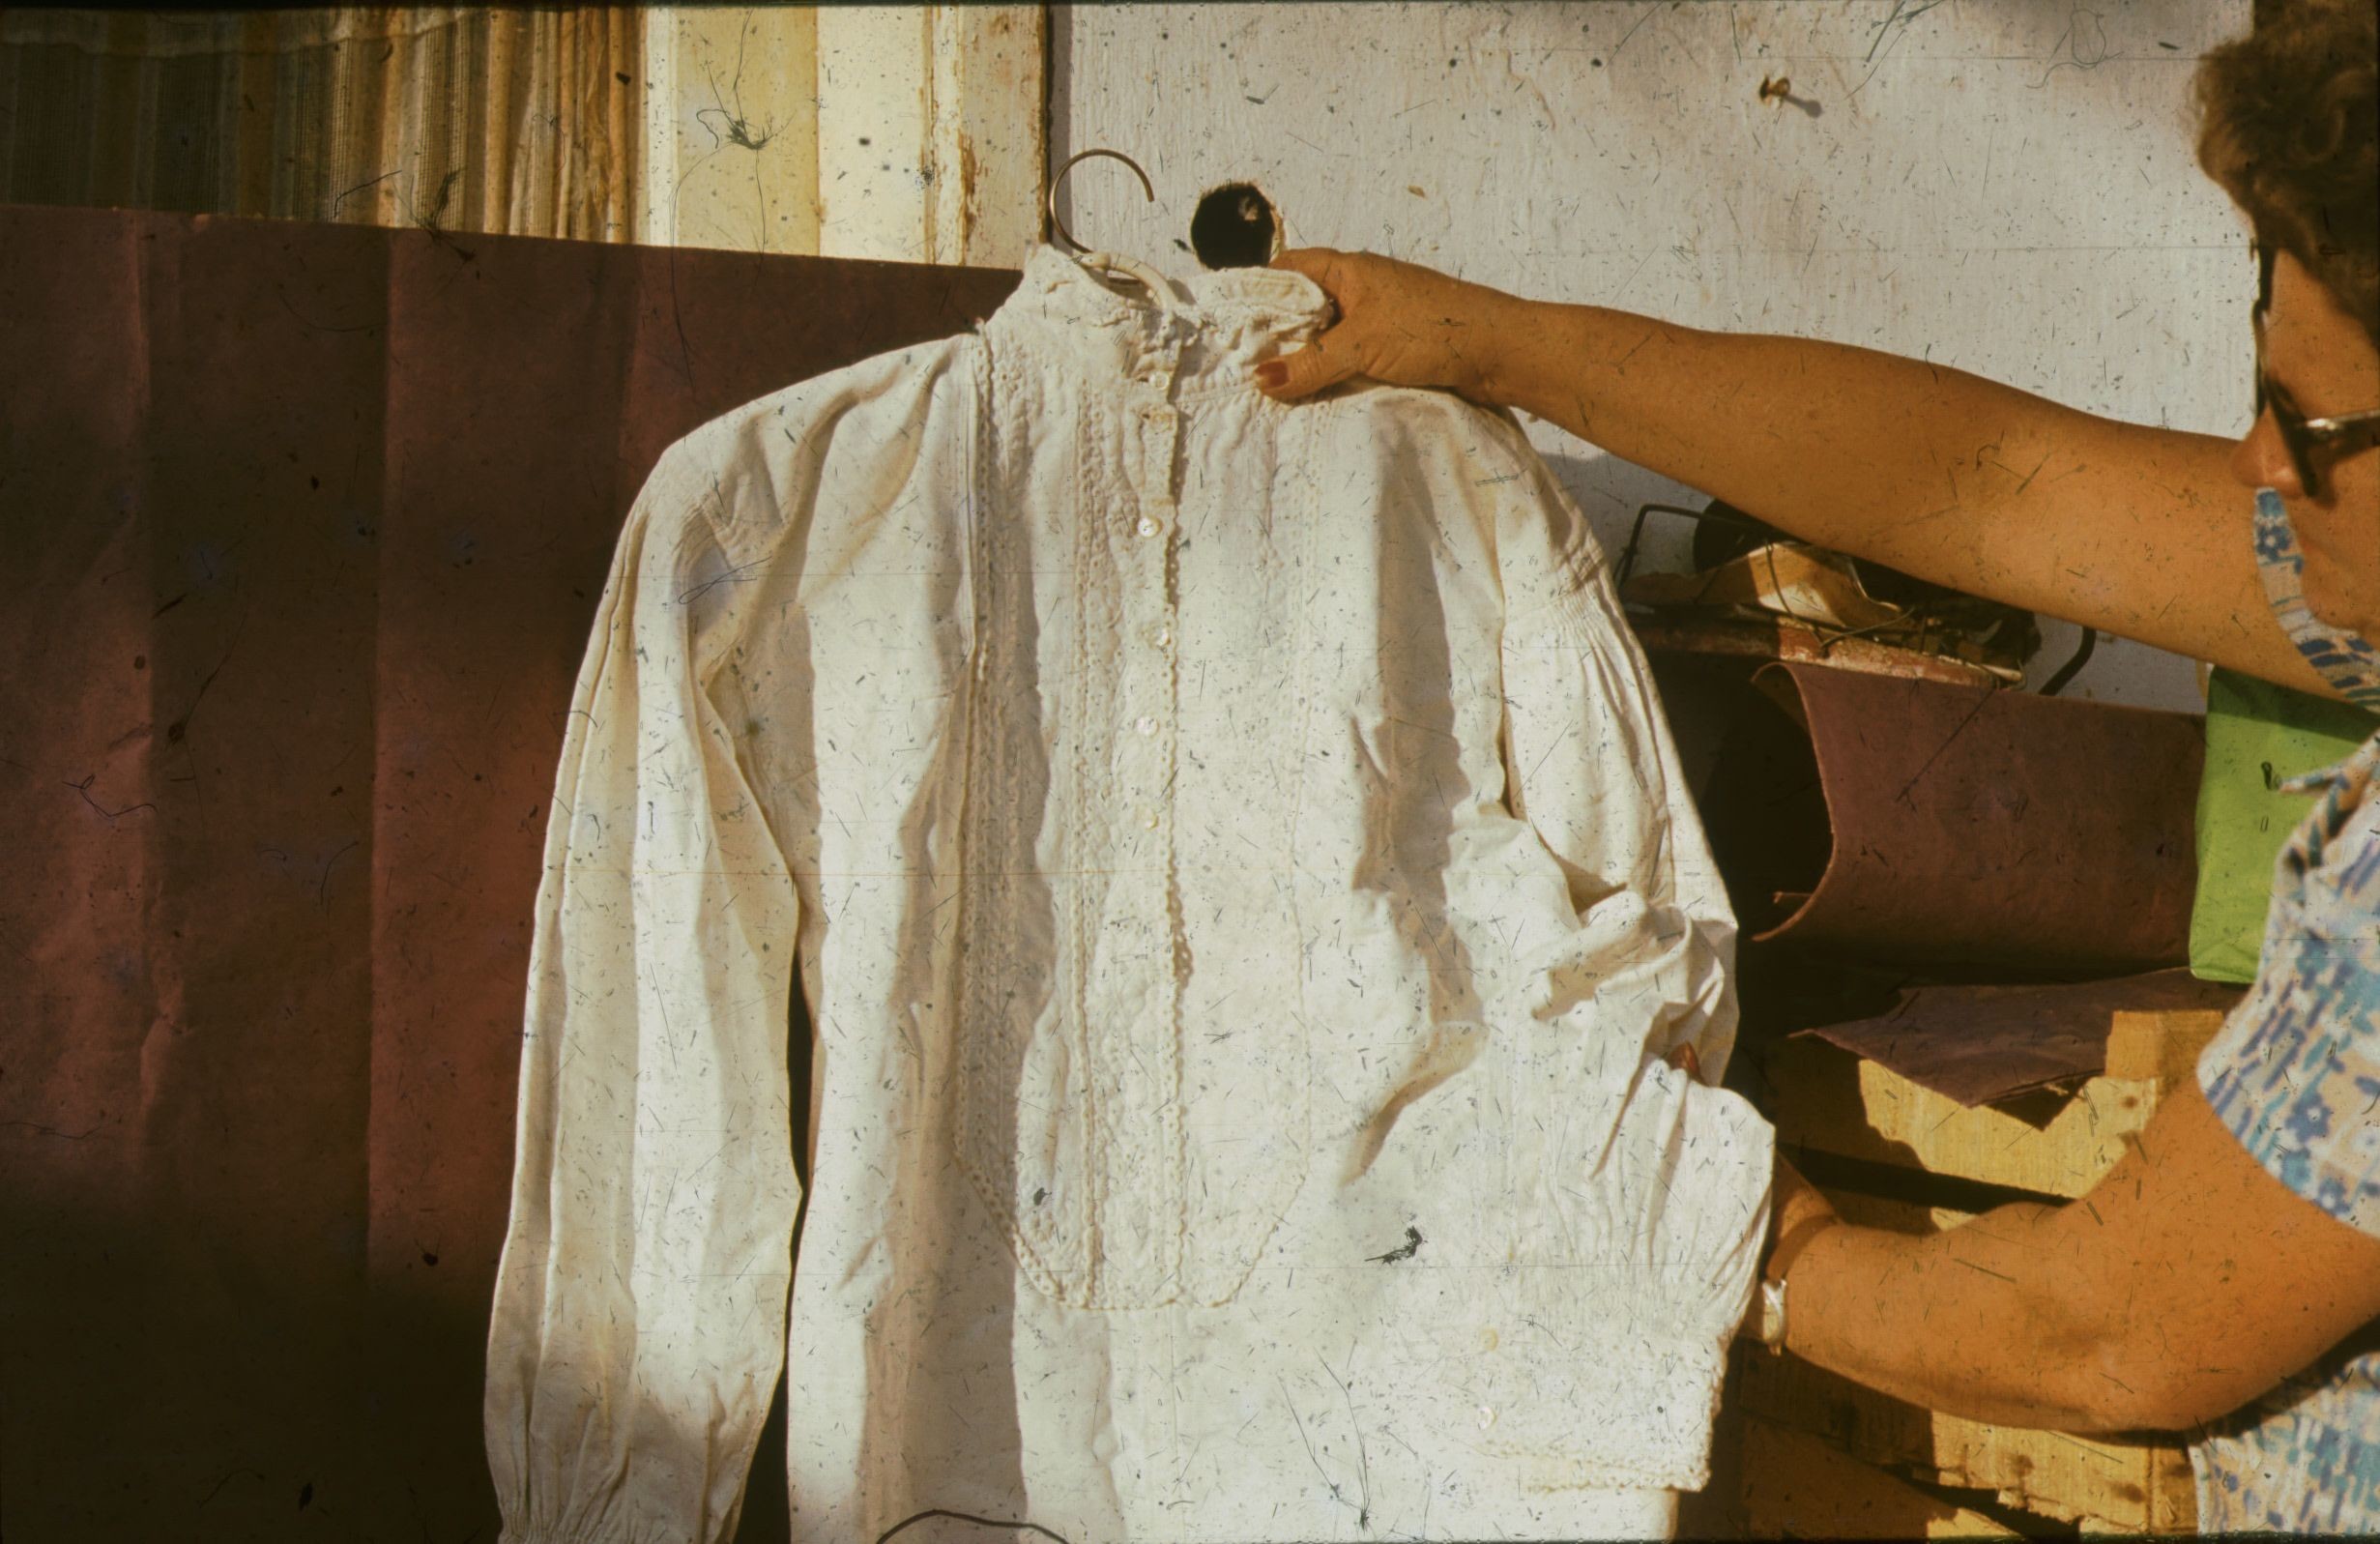 Törökkopányi fehérhímzéses férfi ing (Rippl-Rónai Múzeum CC BY-NC-ND)